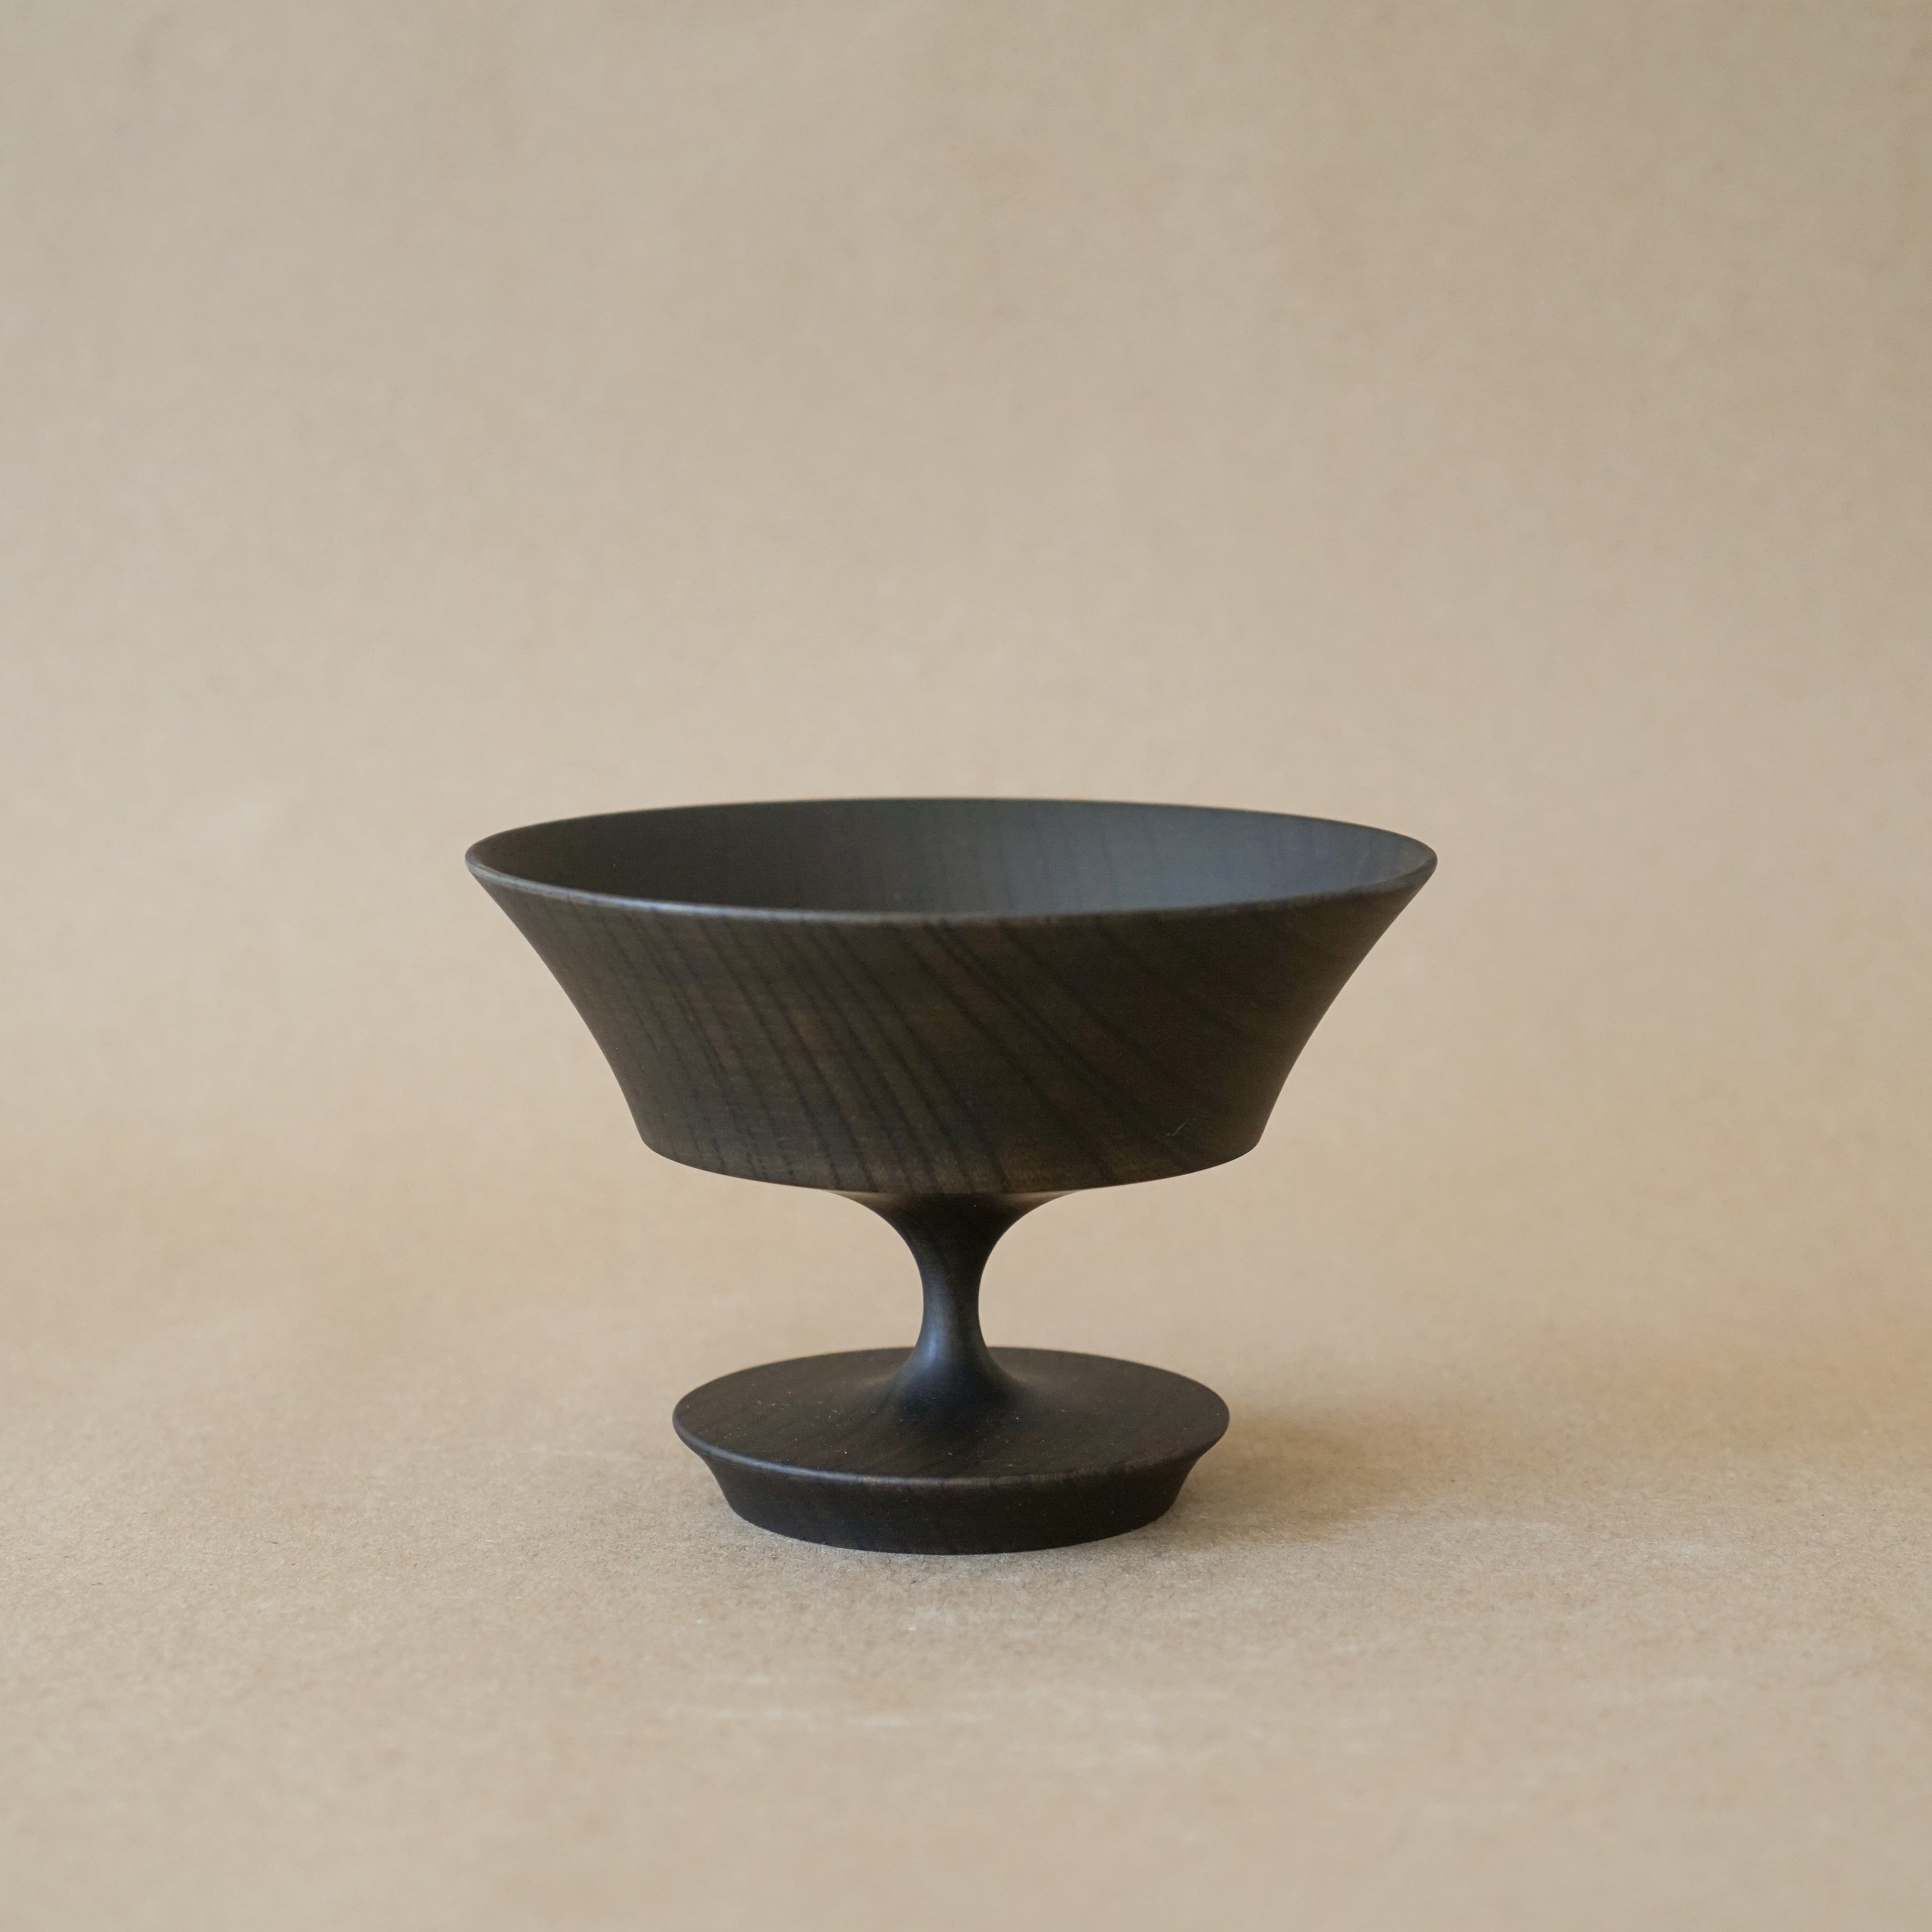 Morihata Decor Black / Small Sinafu 6.0 Pedestal Stand Bowl in Black